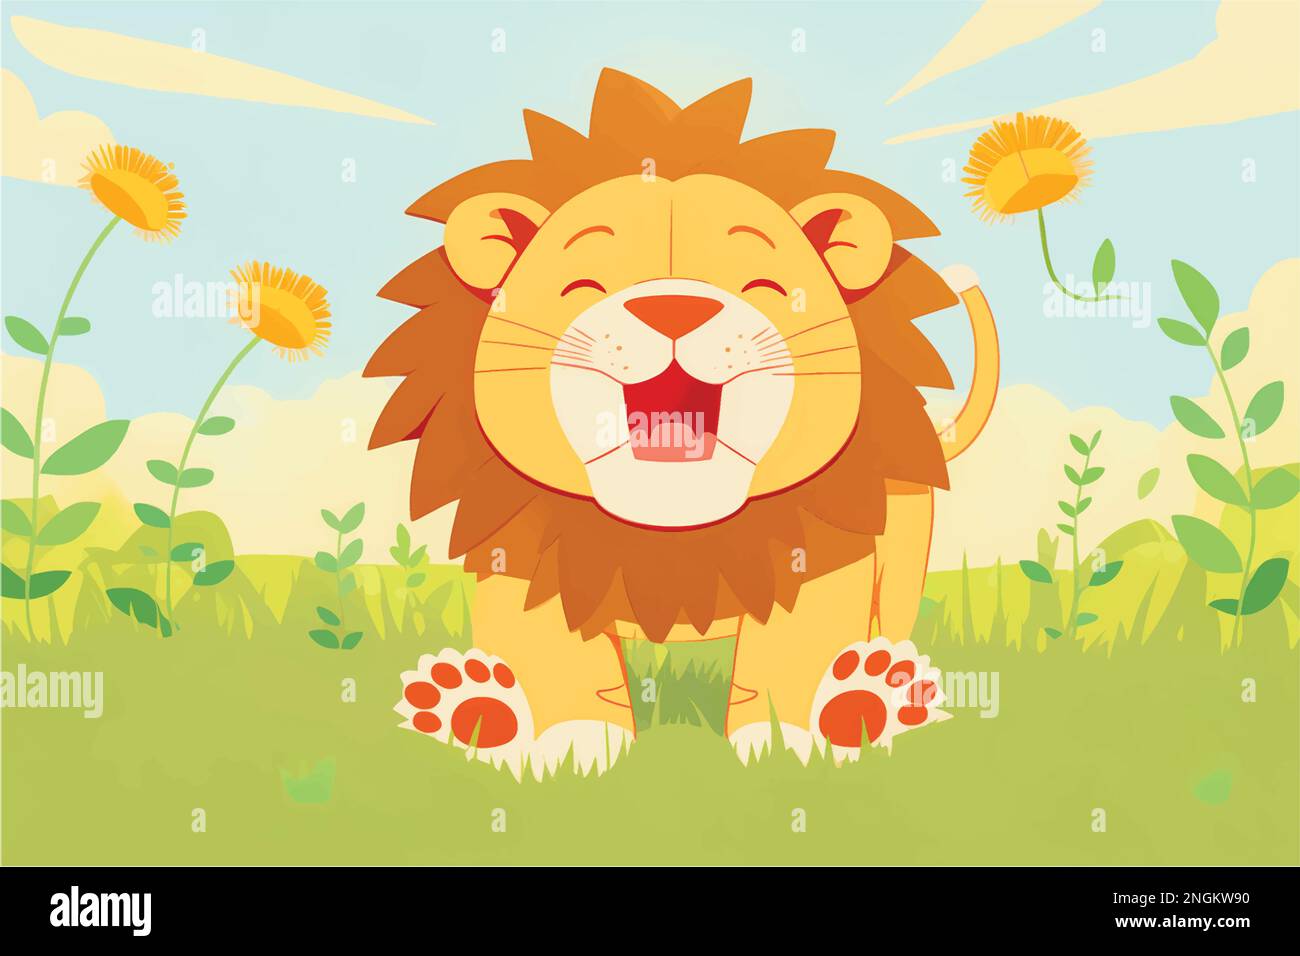 Questa giocosa illustrazione di un leone amichevole con una priorità bassa della natura è perfetta per i capretti Illustrazione Vettoriale